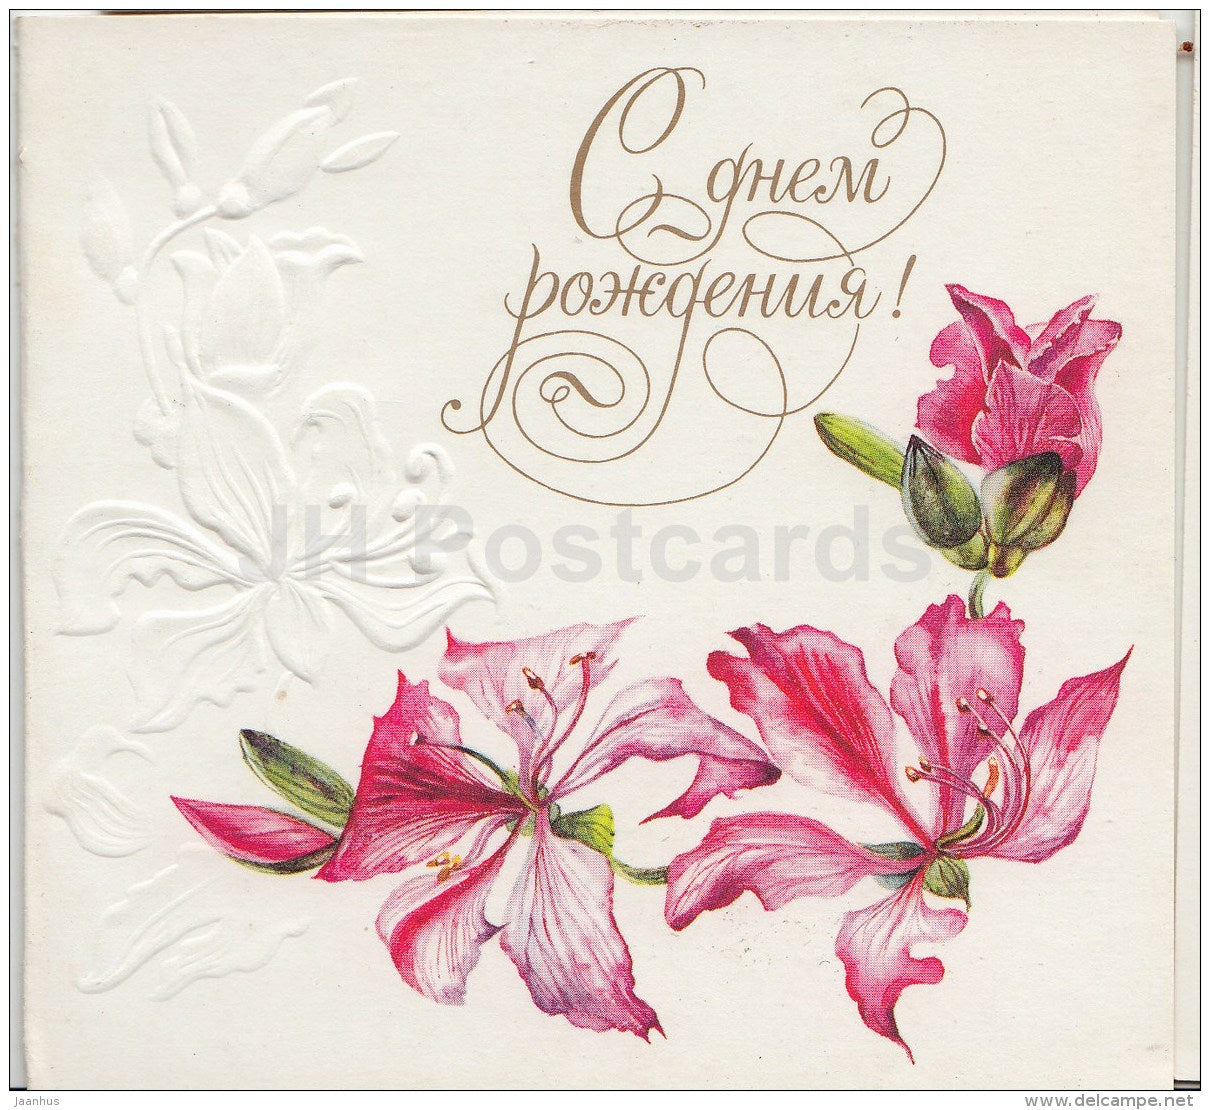 Birthday mini greeting card by N. Okhotina - flowers - illustration - embossed - 1989 - Russia USSR - unused - JH Postcards